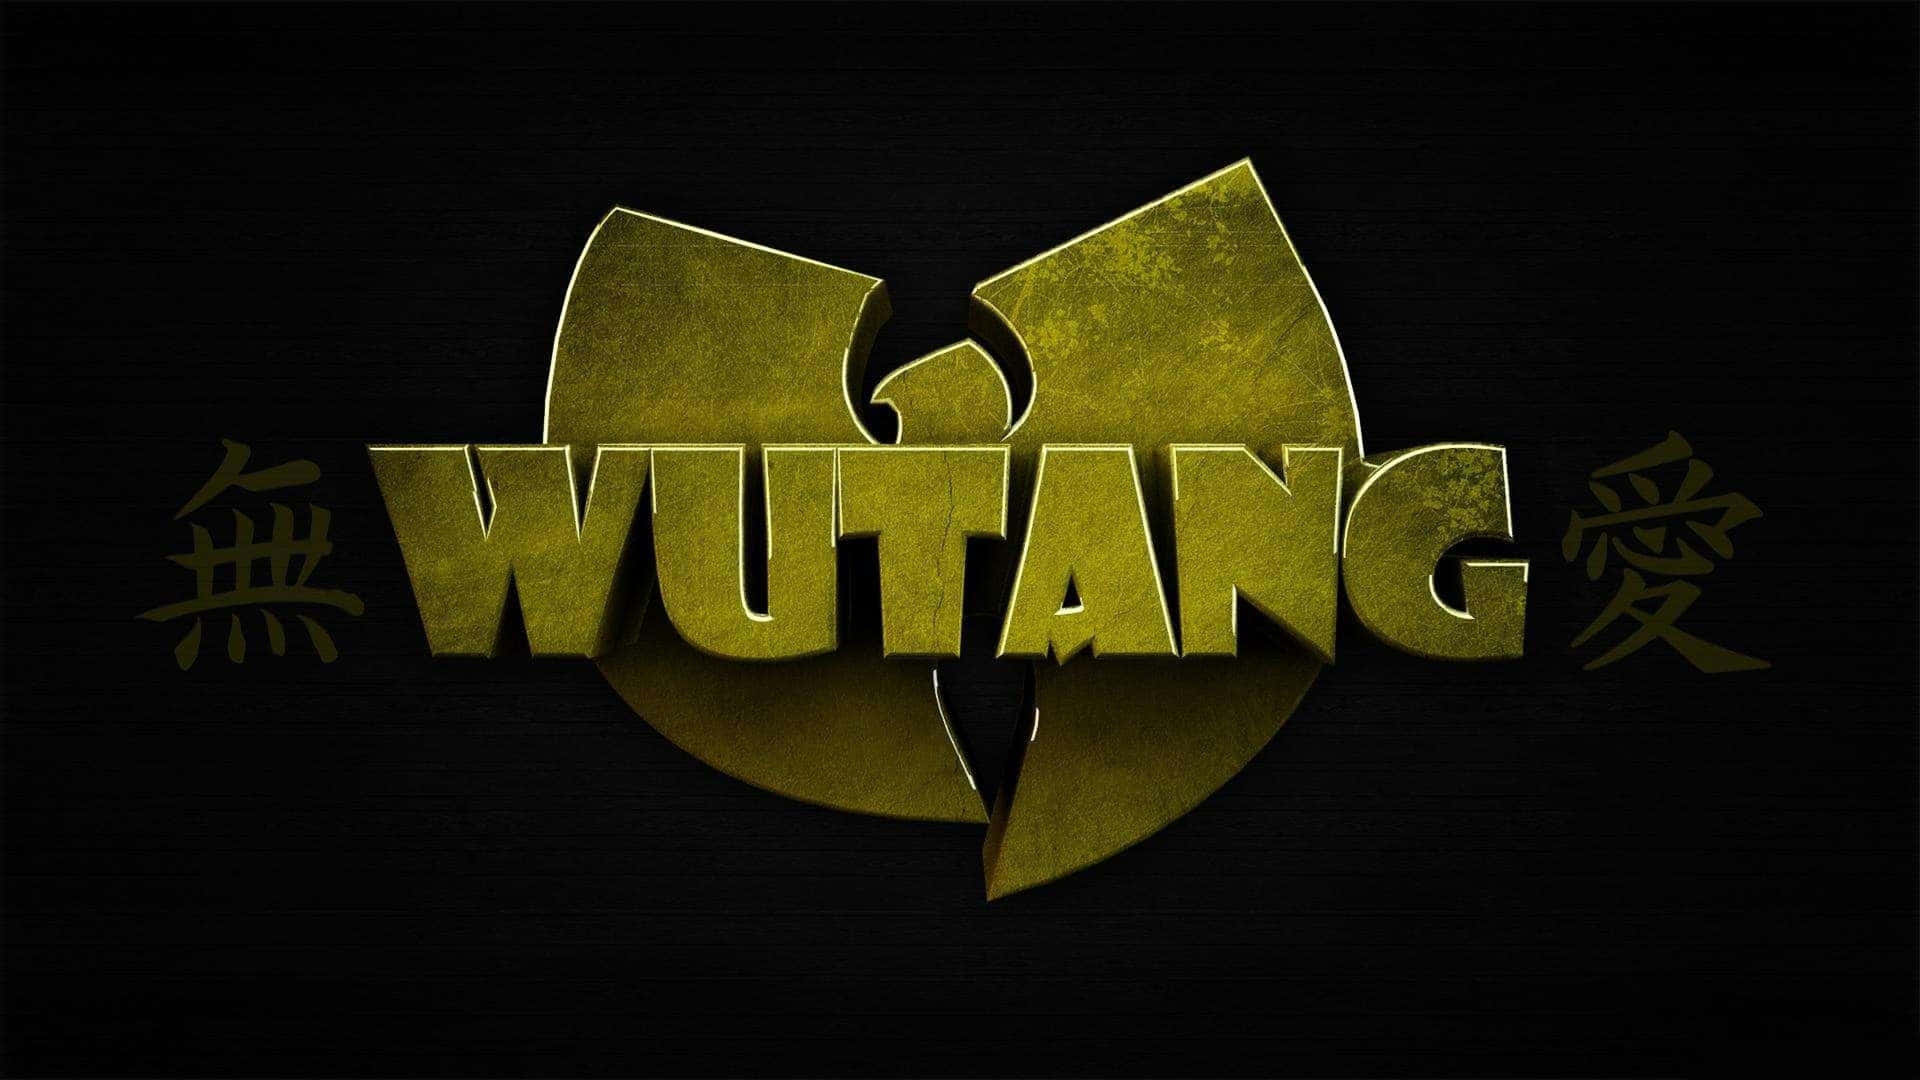 Wu Tang Klan 4k 3840 X 2160 Wallpaper